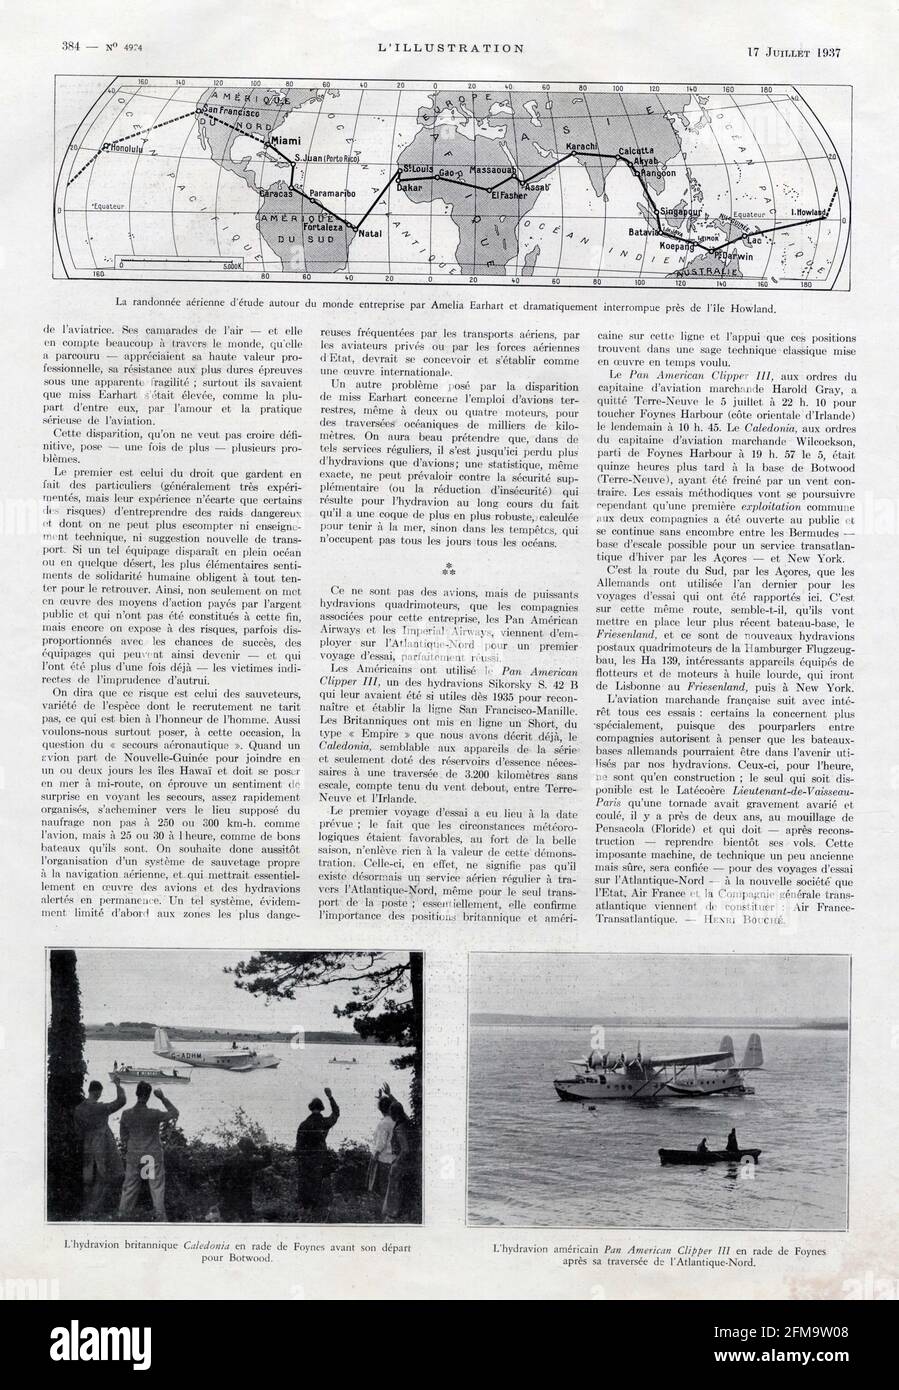 La randonnée aérienne d'étude autour du monde entreprise par Amelia Earhart et dramatiquement interrompue près de l'île Howland Banque D'Images